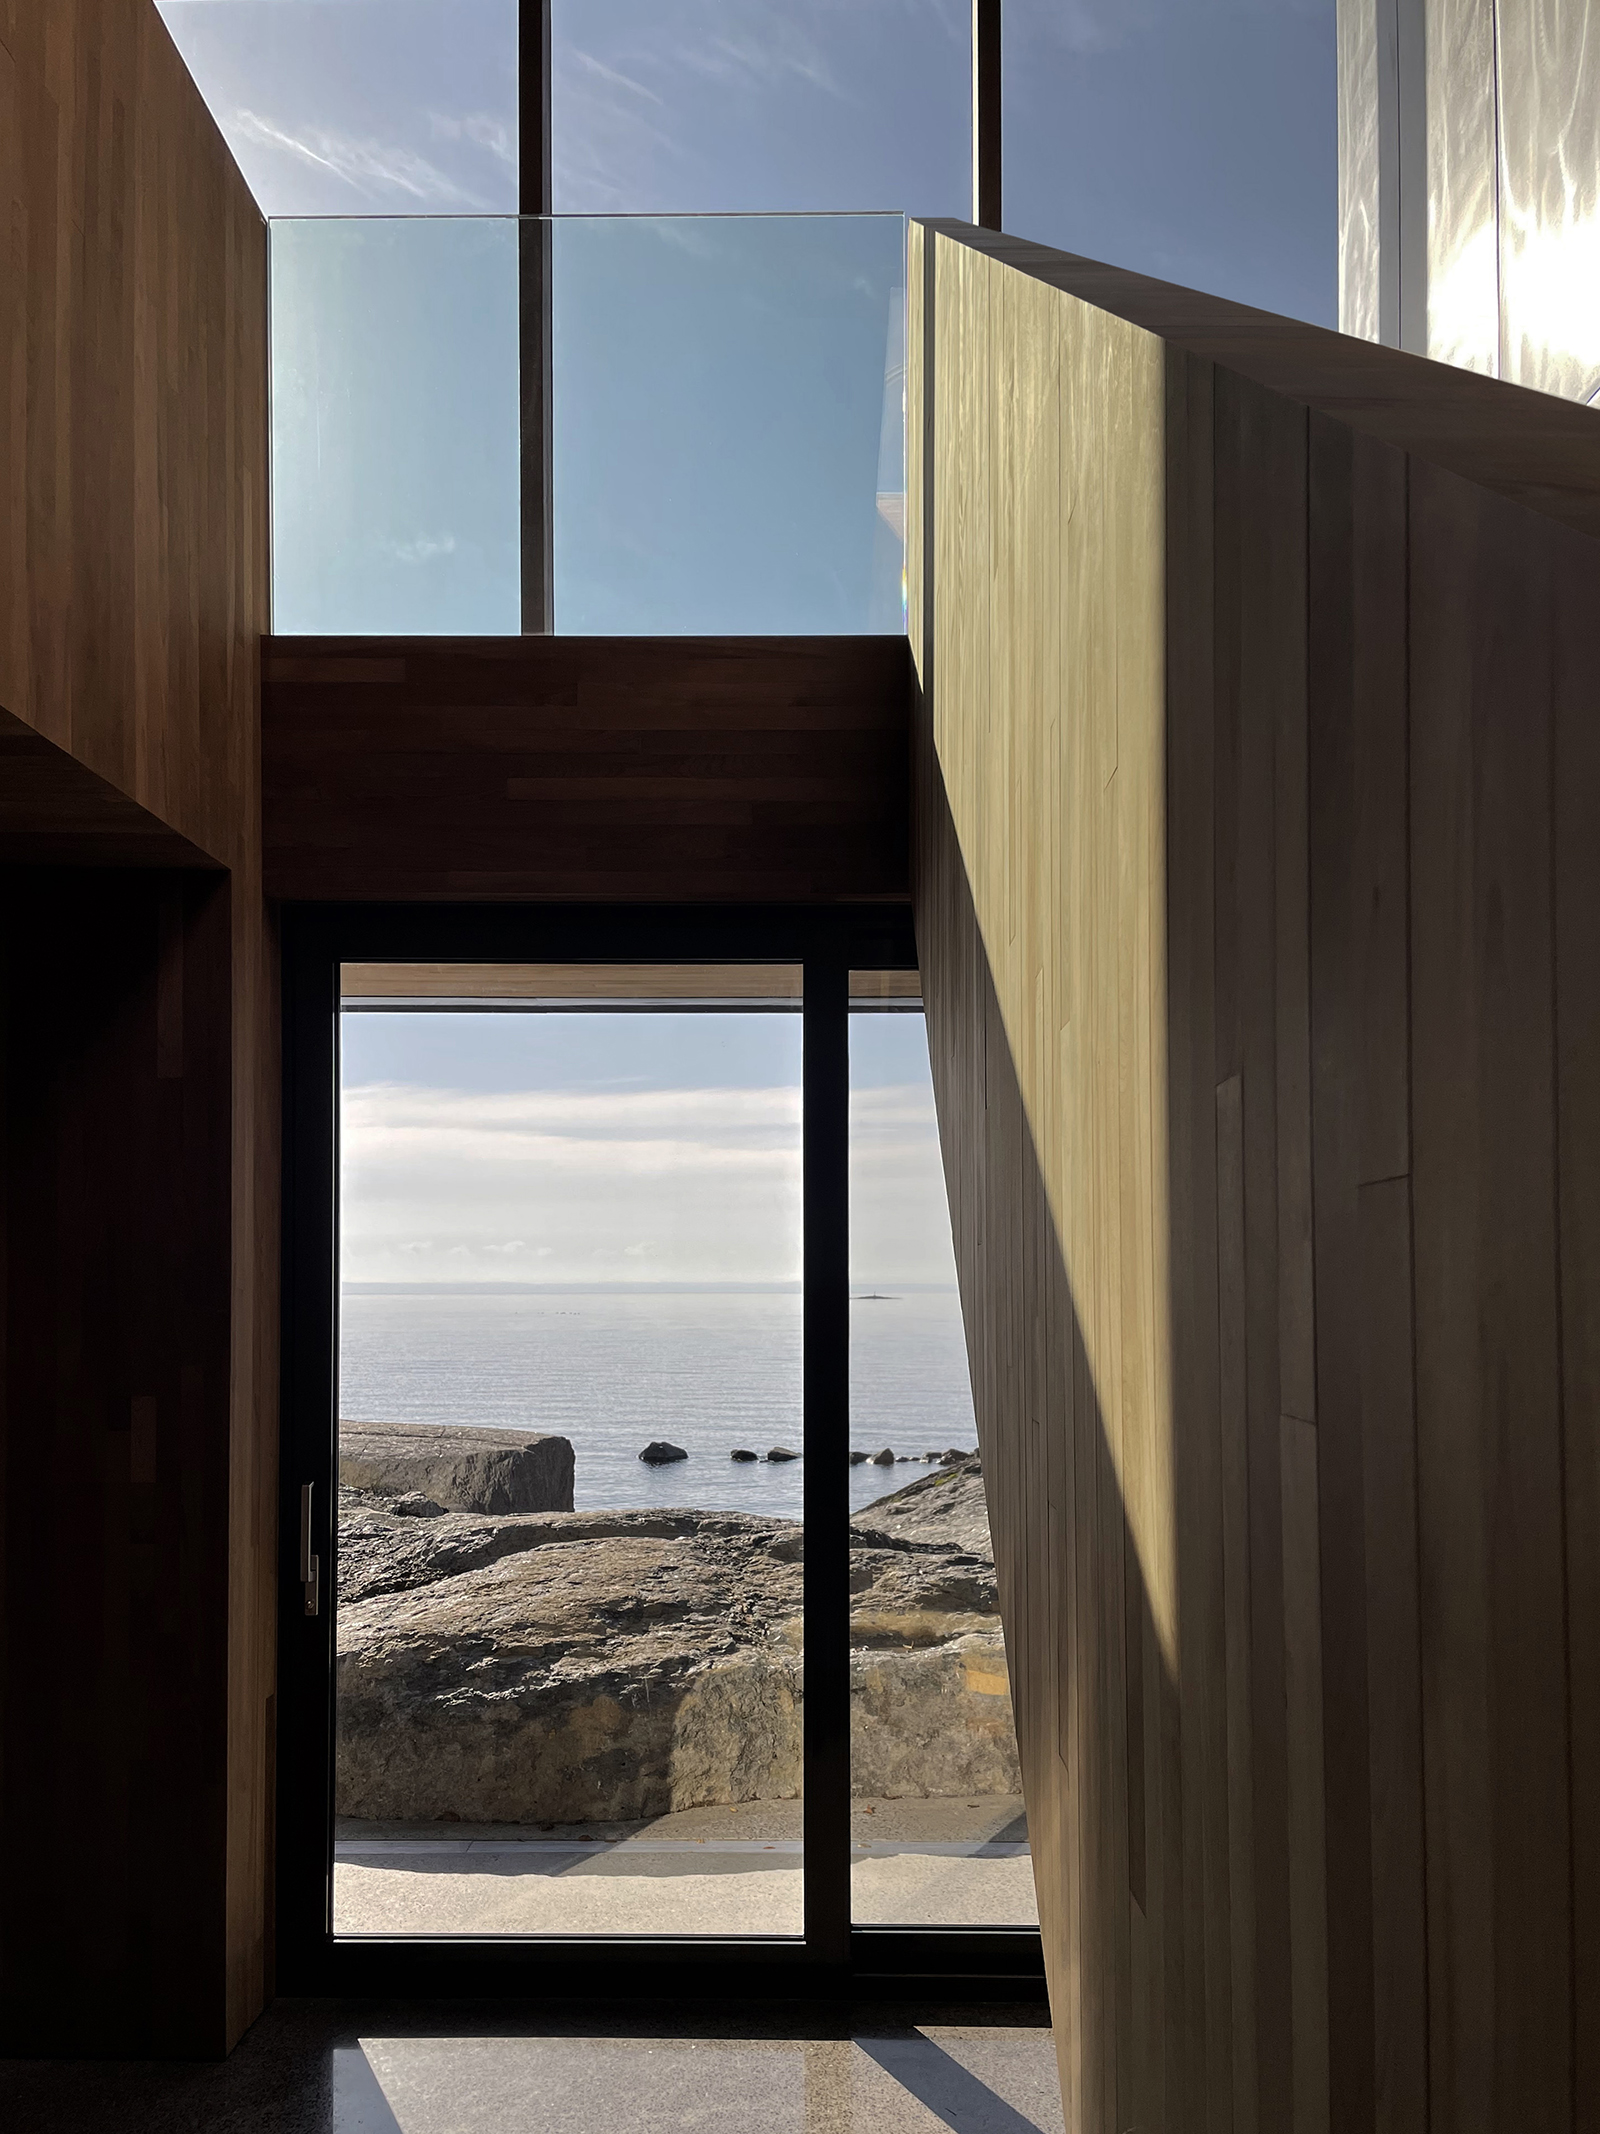 L'intérieur de la résidence faite de bois pâle et de grandes vitres donnant un beau visuel sur la rive d'eau